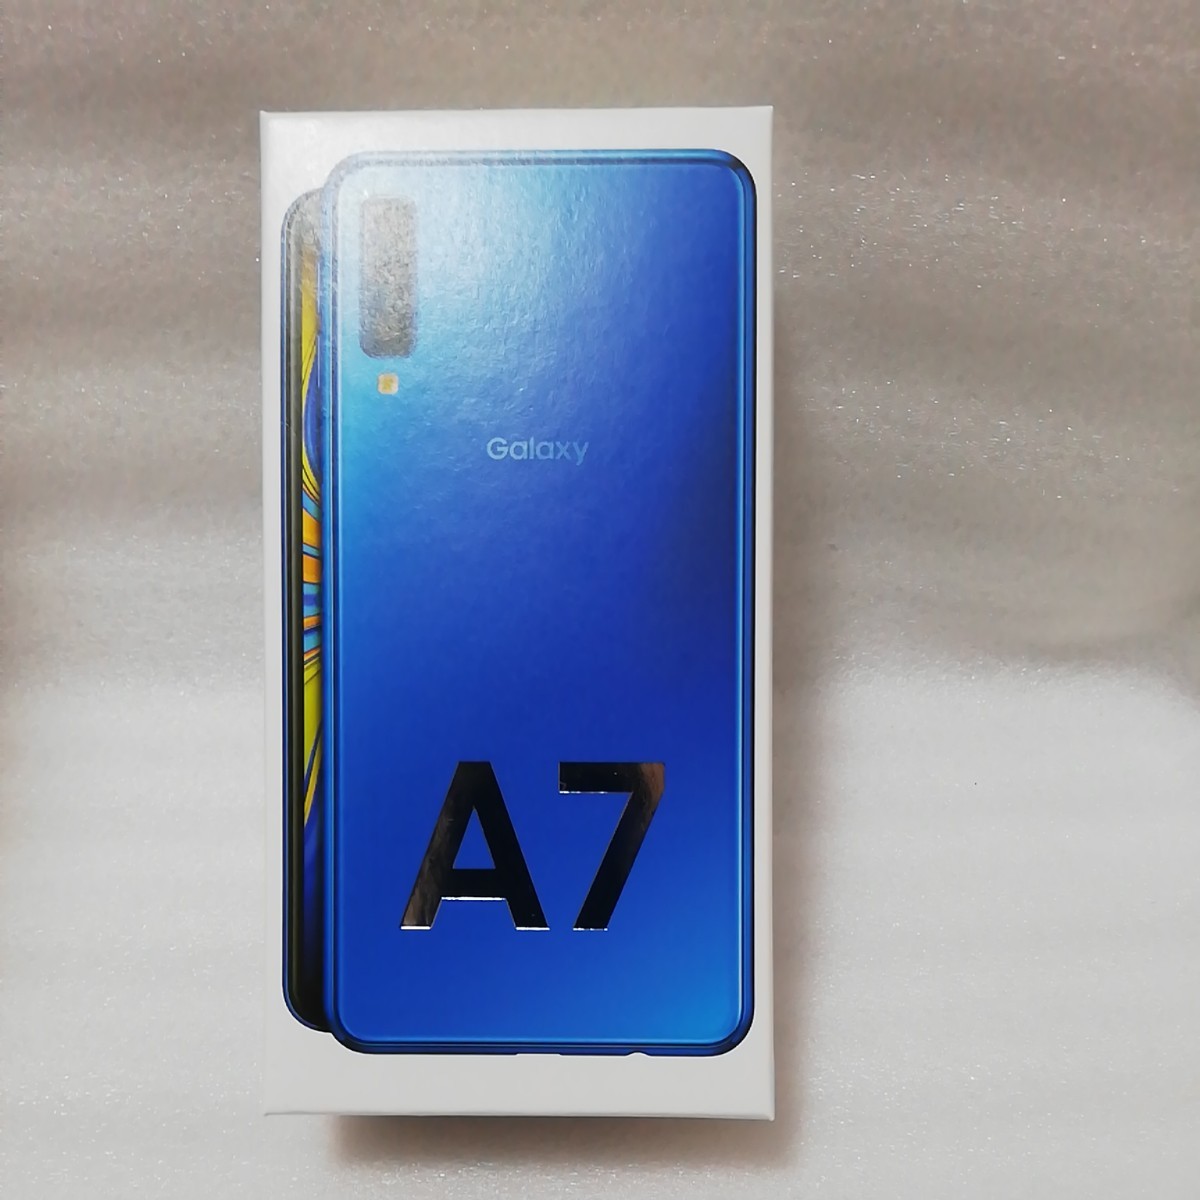 Galaxy A7 ブルー 未開封新品 楽天モバイル